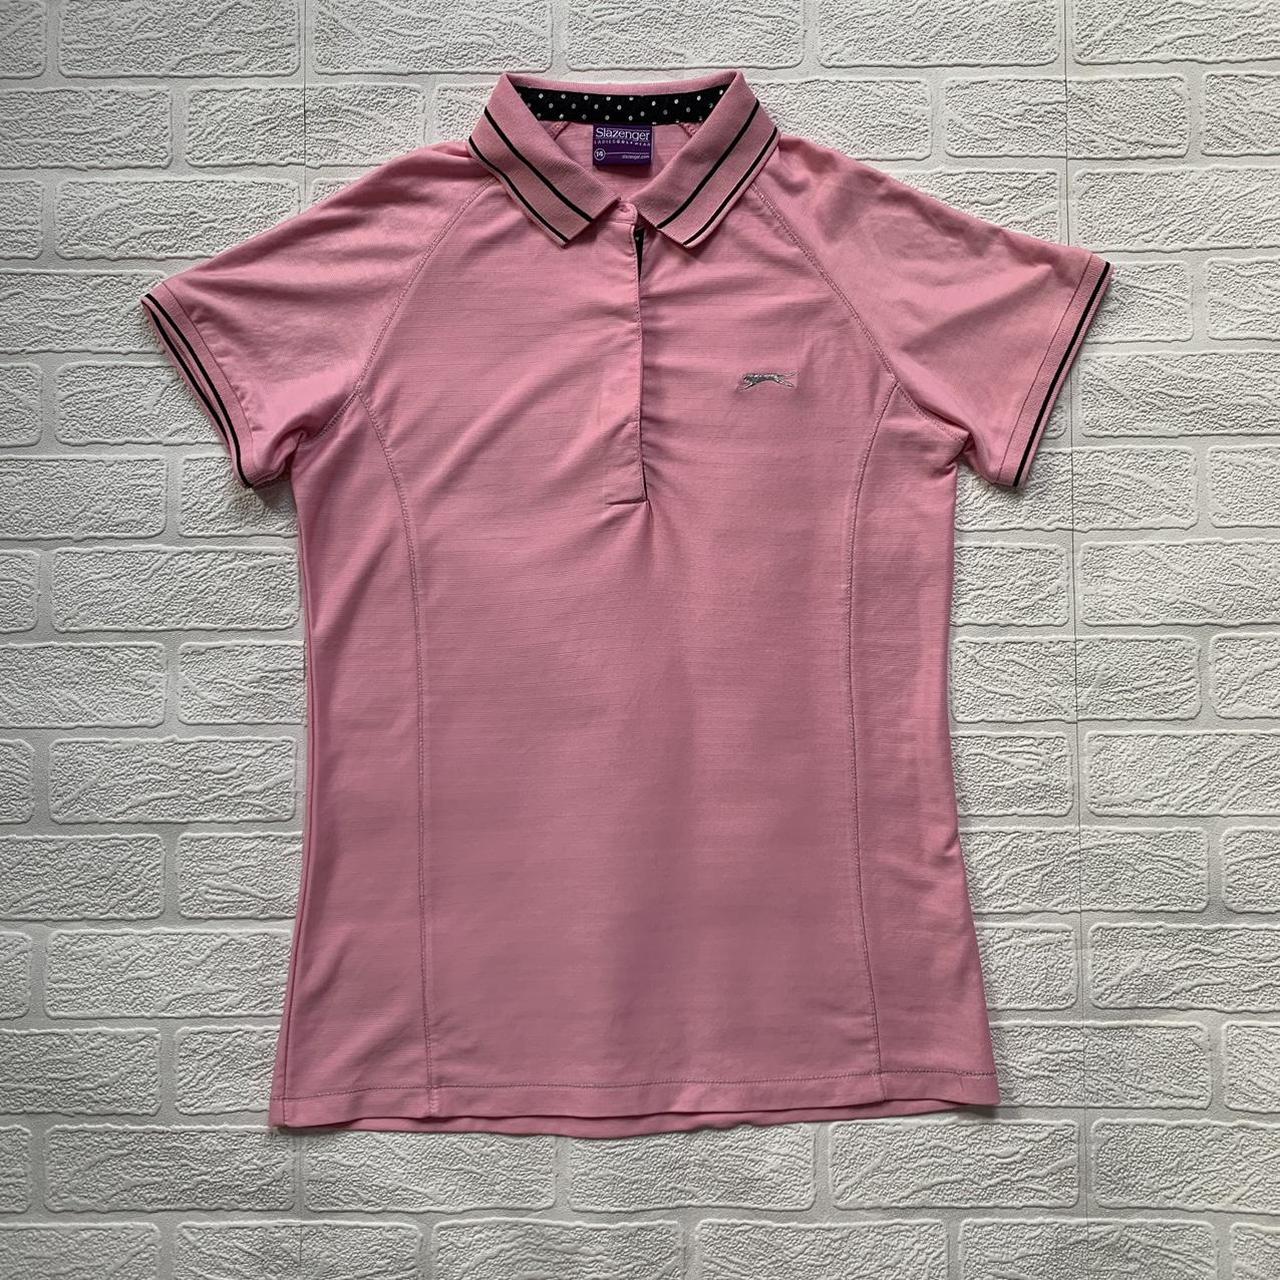 Slazenger Golf Polo Shirt / T-Shirt × Size / Medium... - Depop